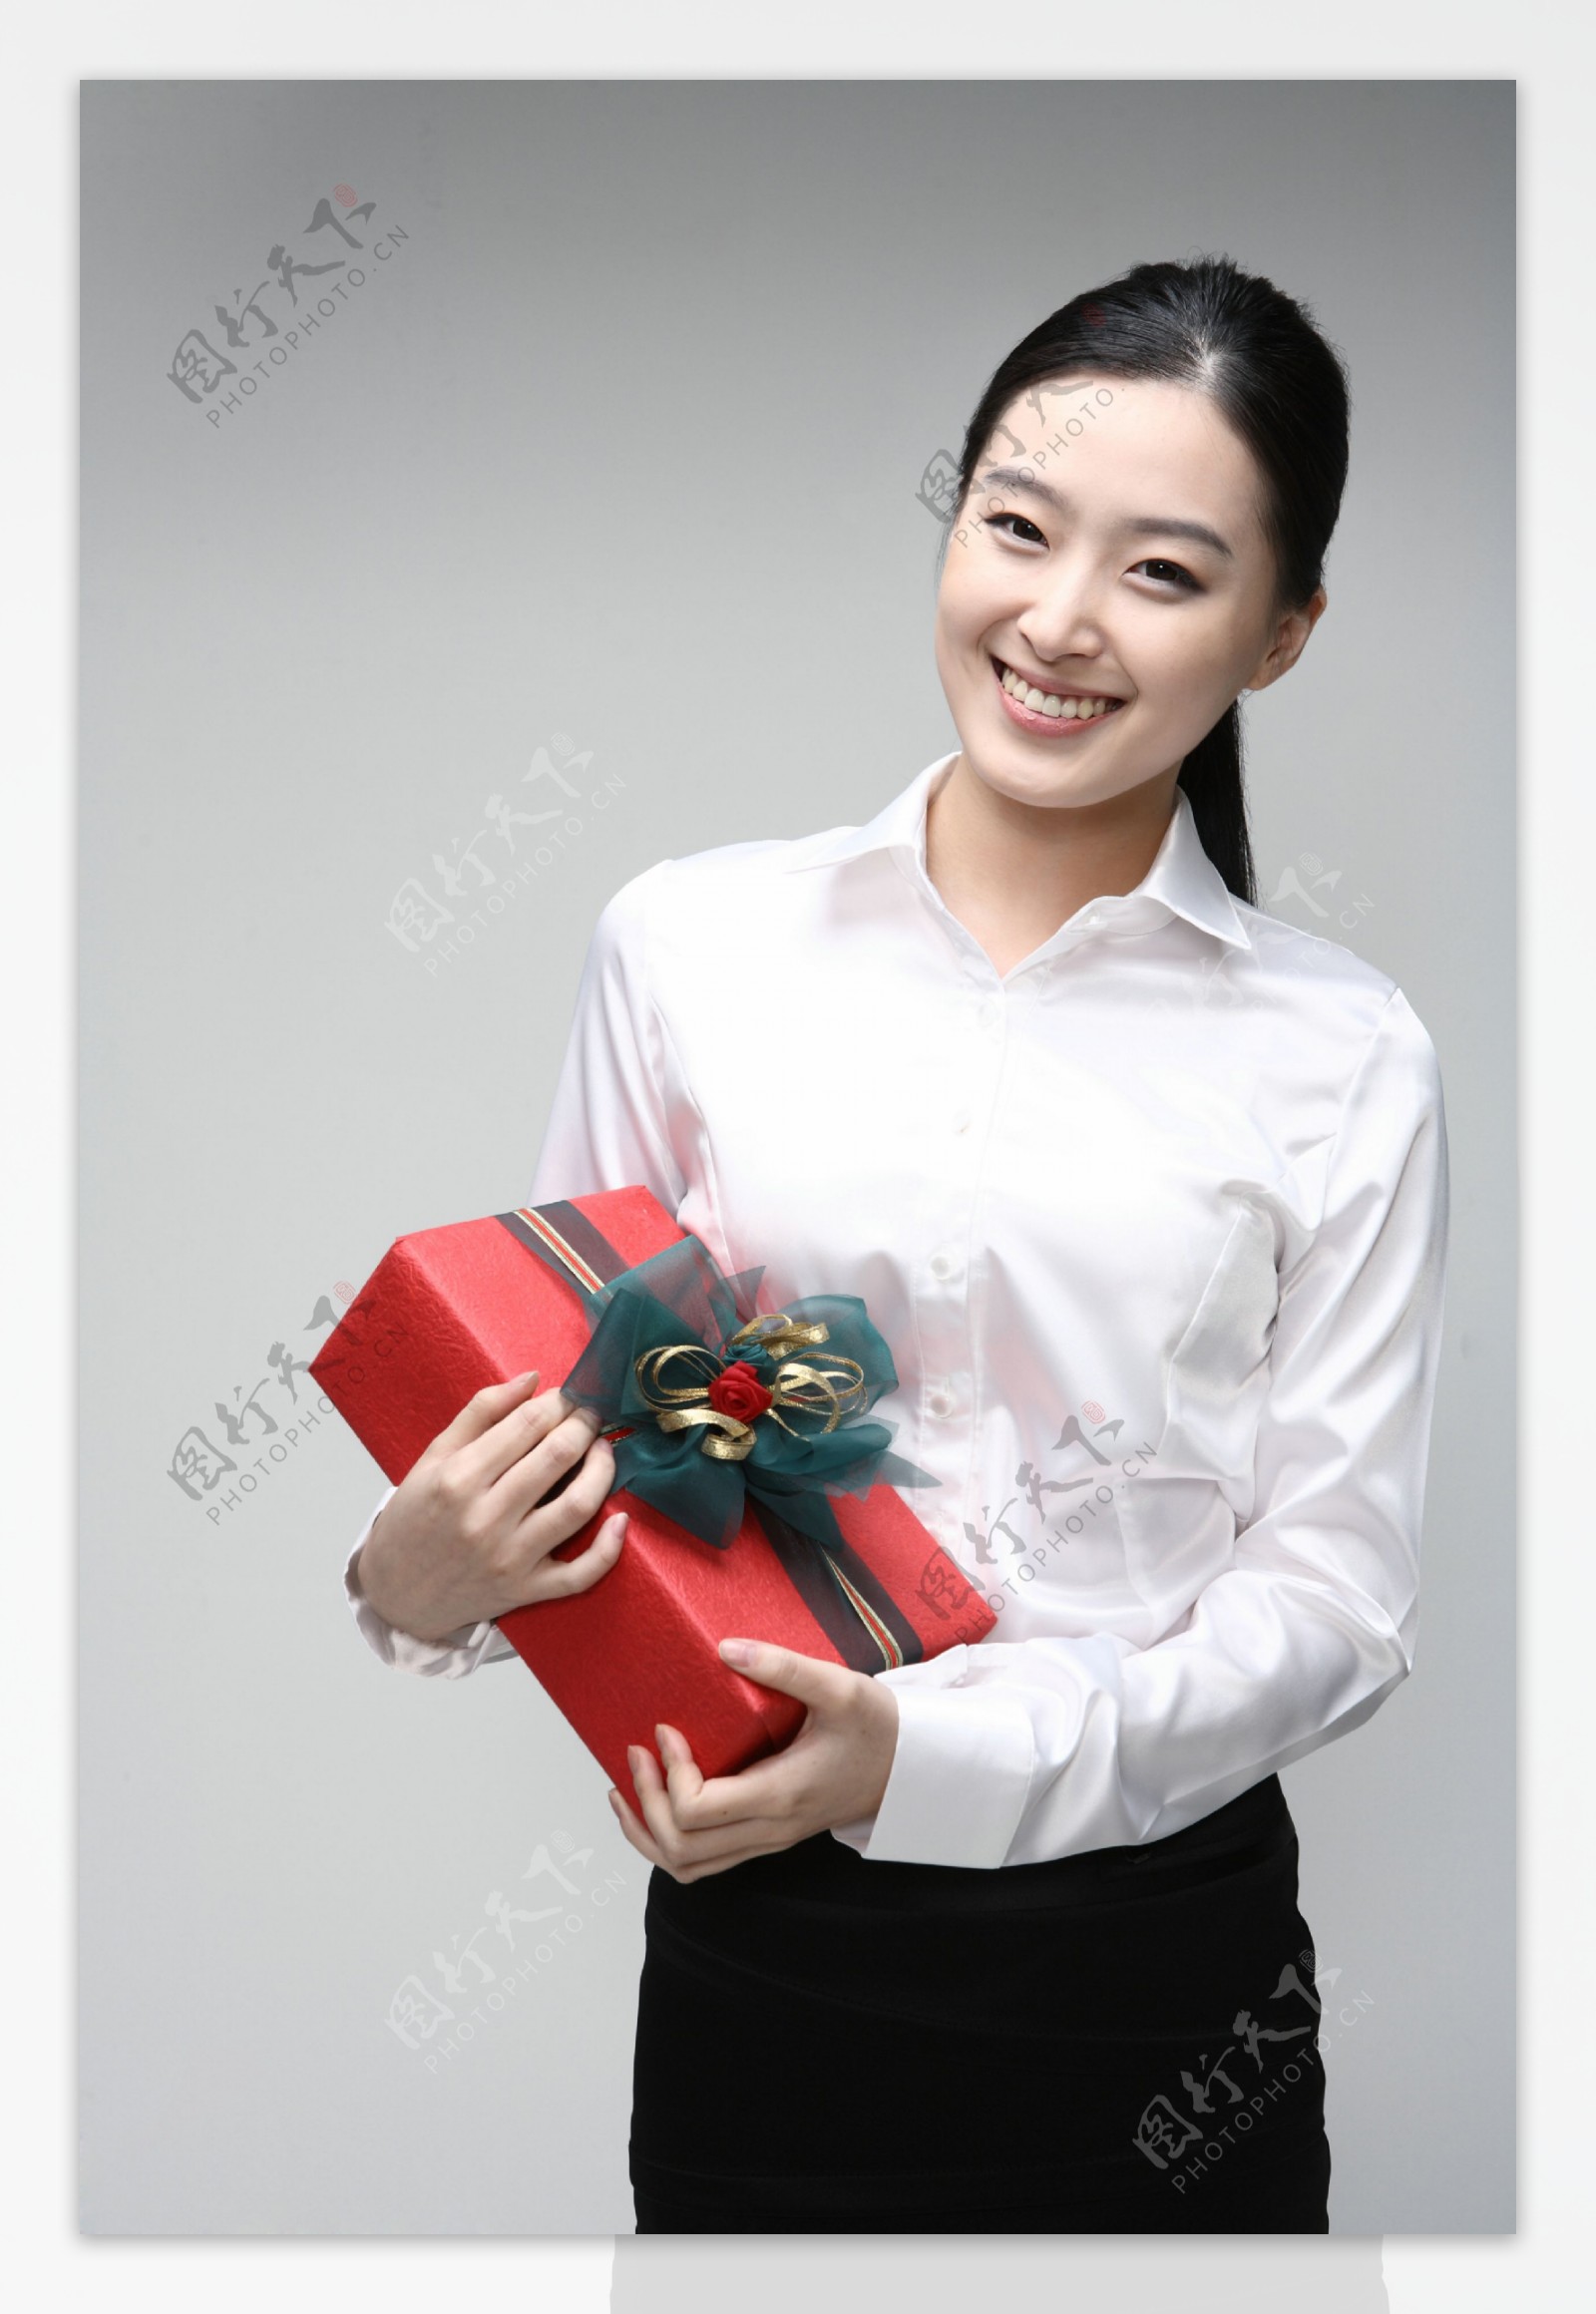 抱着礼物微笑的商务美女图片